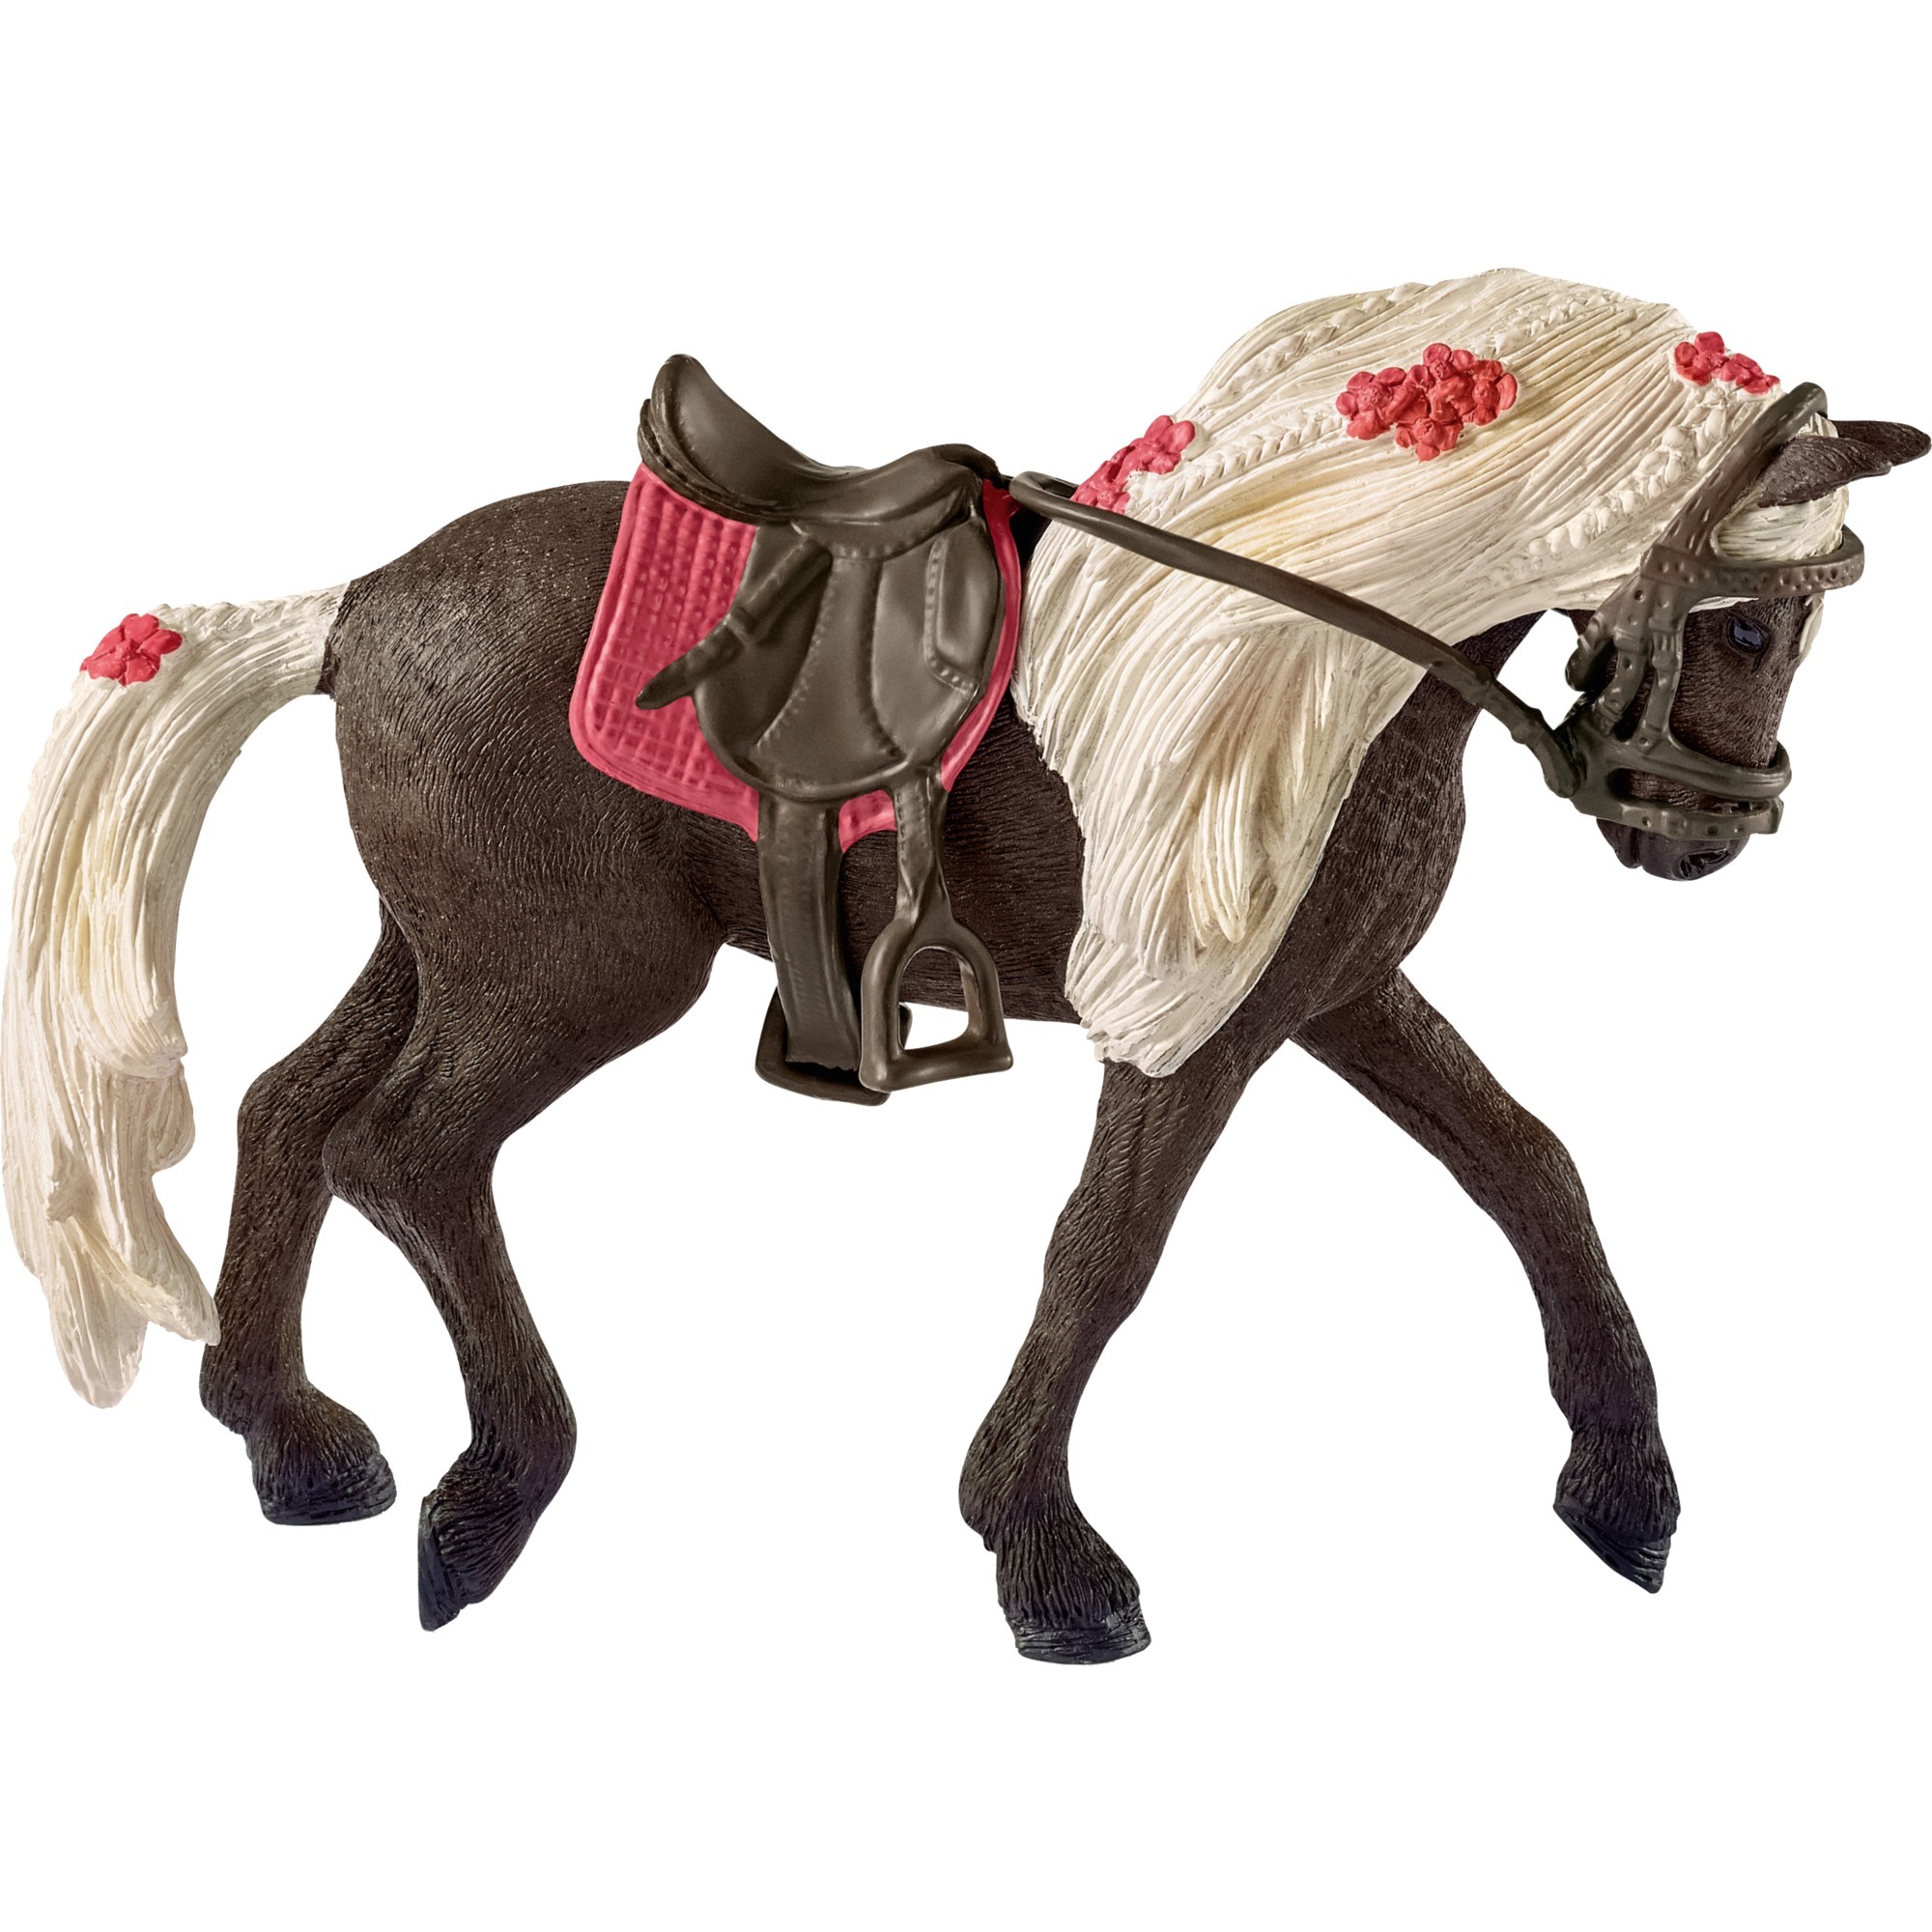 Image of Alternate - Horse Club Rocky Mountain Horse Stute Pferdeshow, Spielfigur online einkaufen bei Alternate